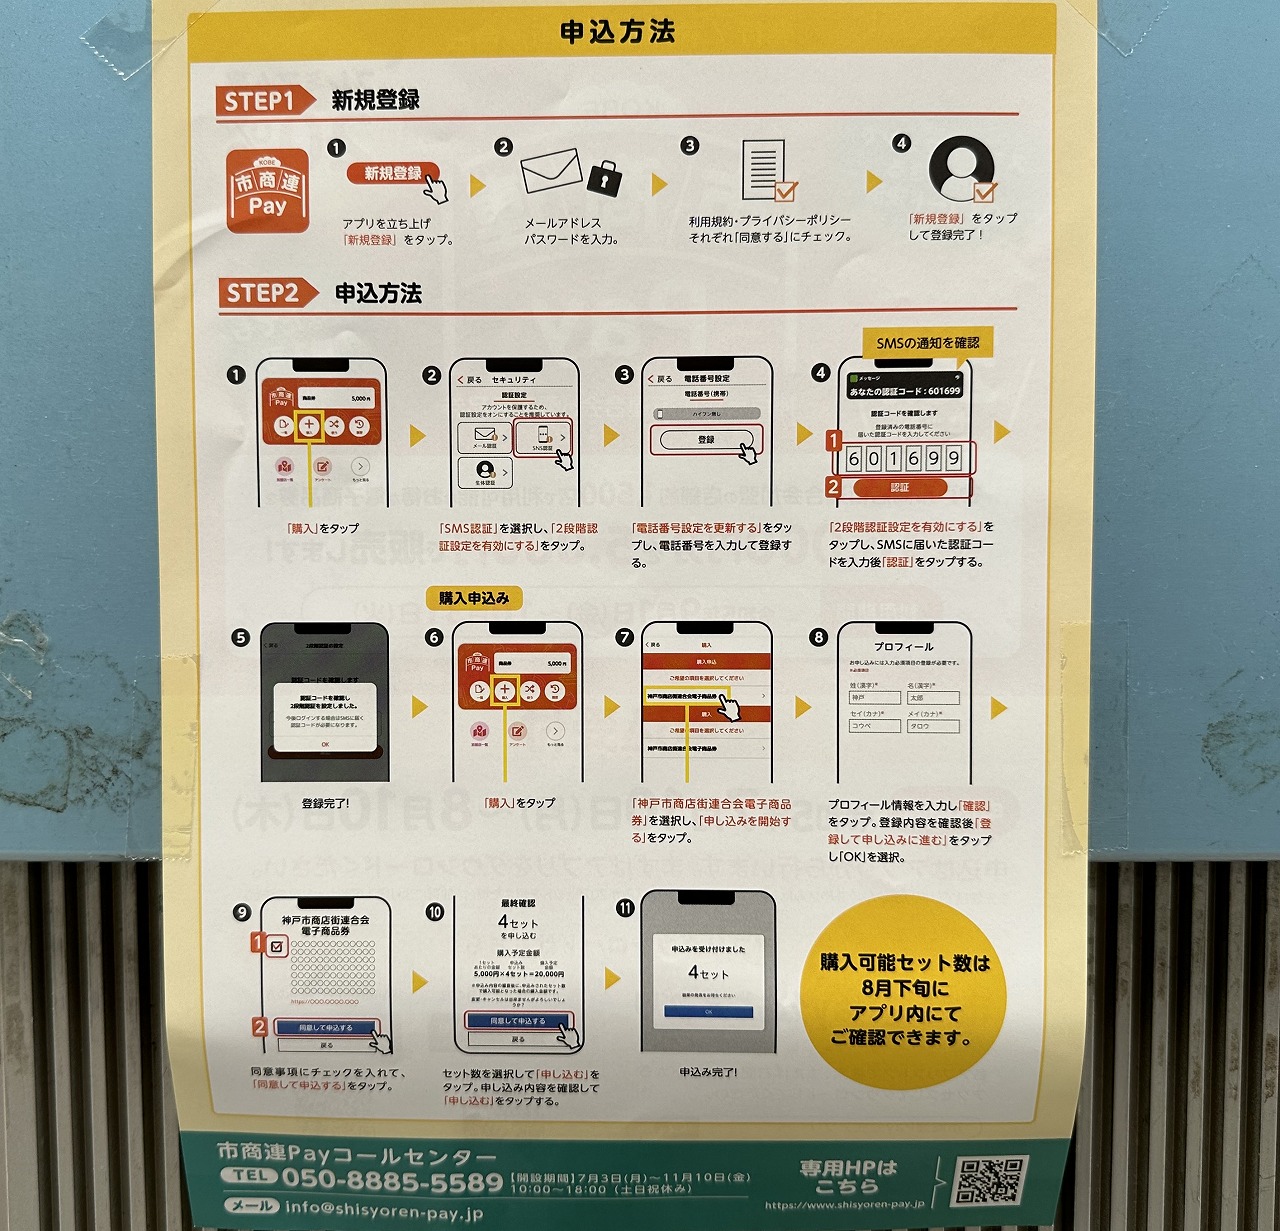 神戸プレミアム付き電子商品券「市商連Pay公式アプリ」